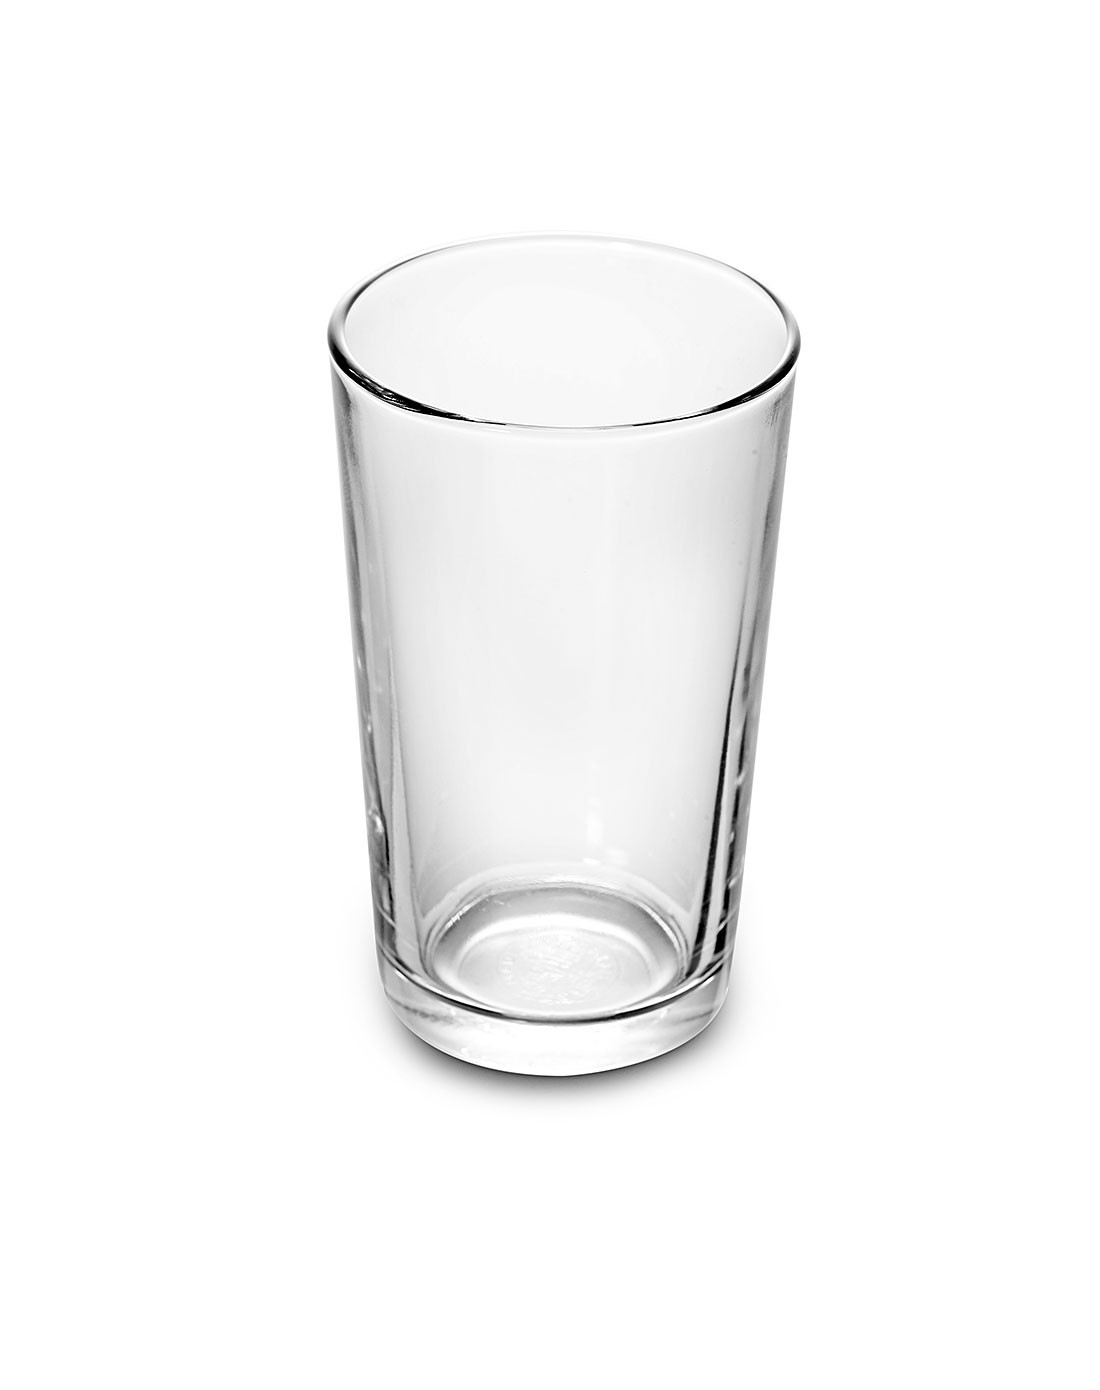 法国进口duralex水杯 250ml 透明色(6个)